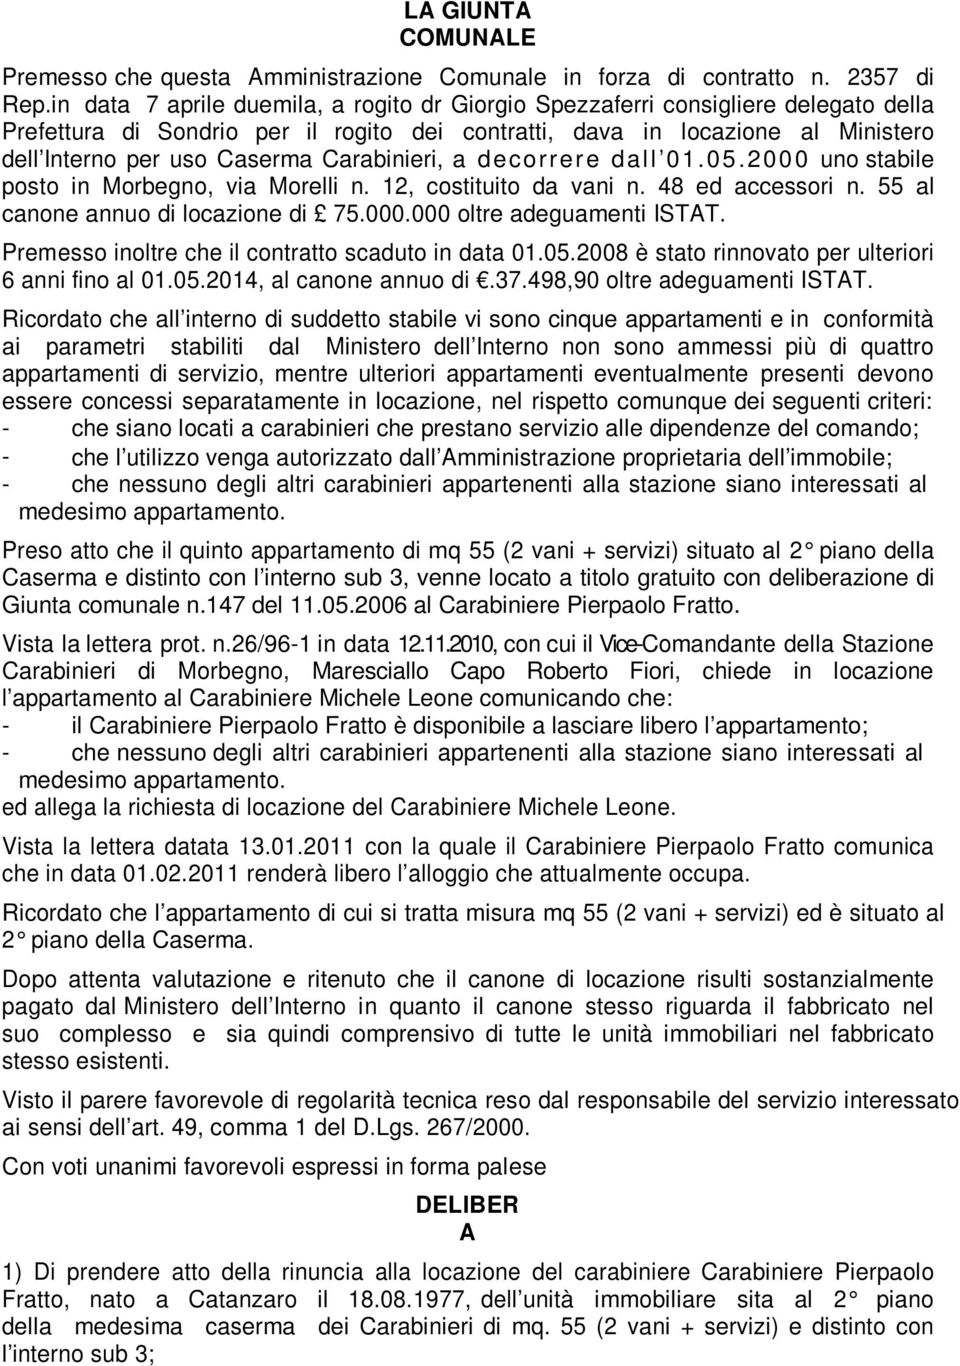 Carabinieri, a decorrere dall 01.05.2000 uno stabile posto in Morbegno, via Morelli n. 12, costituito da vani n. 48 ed accessori n. 55 al canone annuo di locazione di 75.000.000 oltre adeguamenti ISTAT.